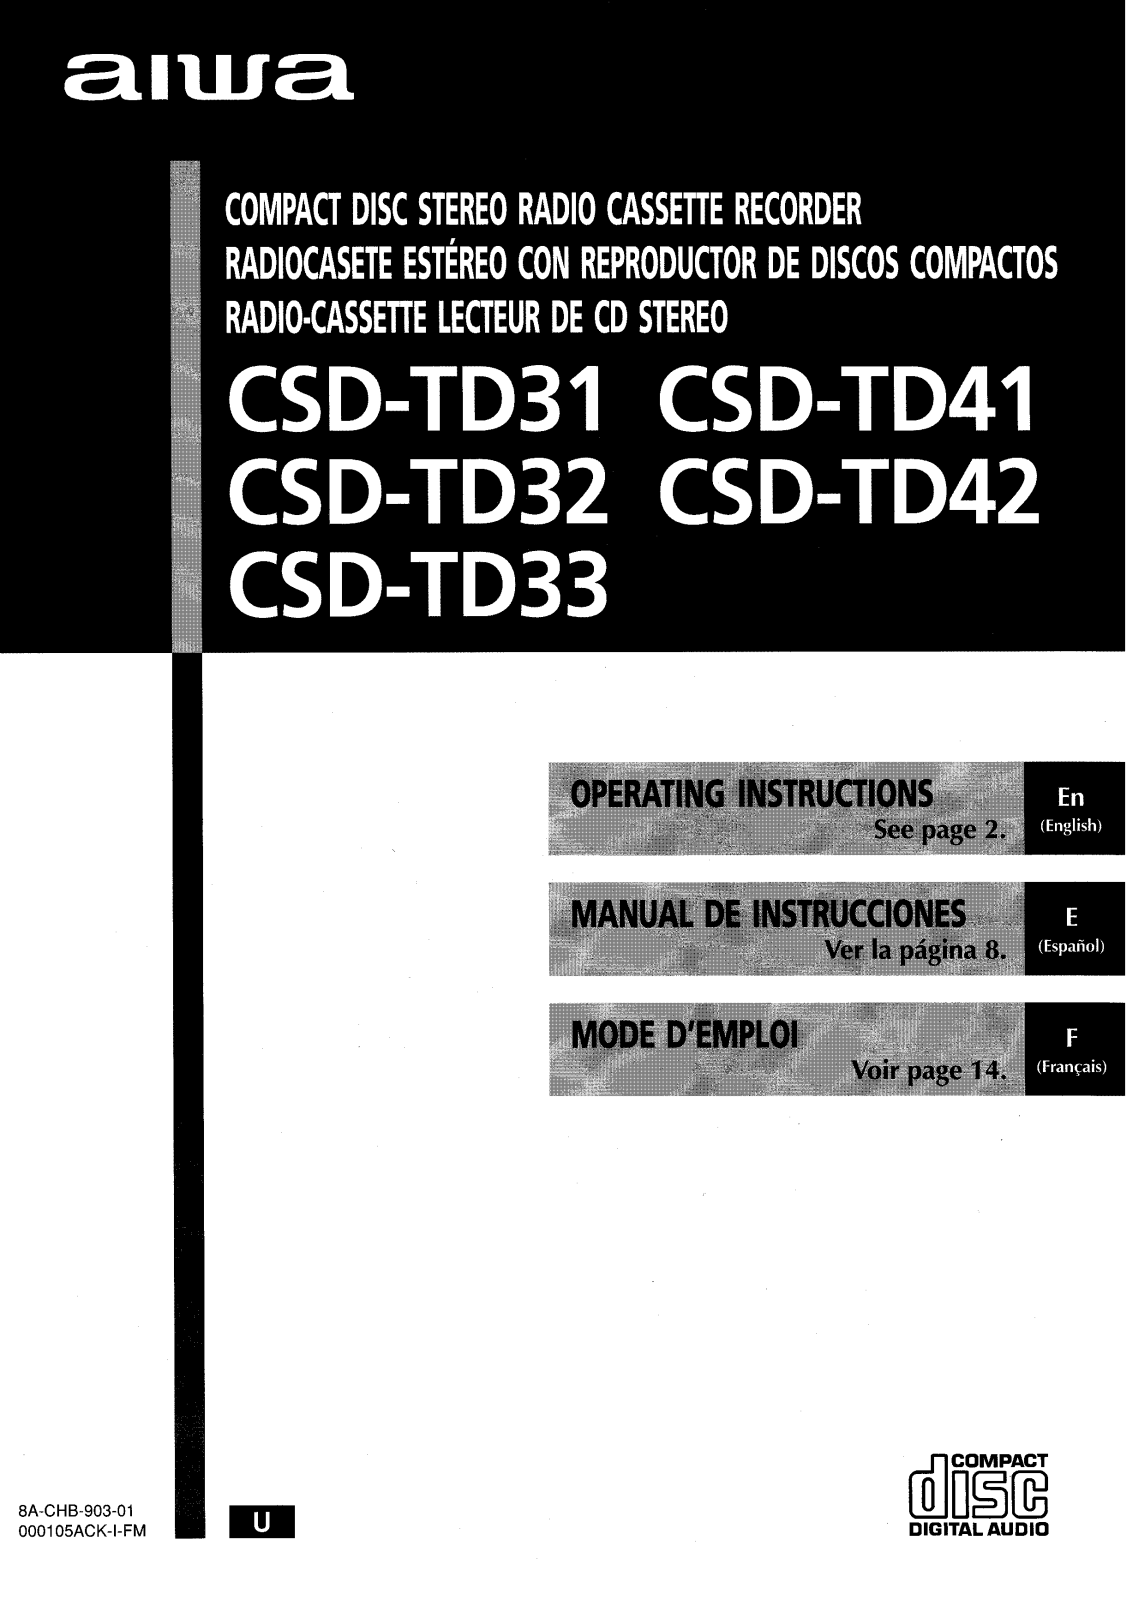 Sony CSDTD31, CSDTD32, CSDTD33, CSDTD41, CSDTD42 Operating Manual